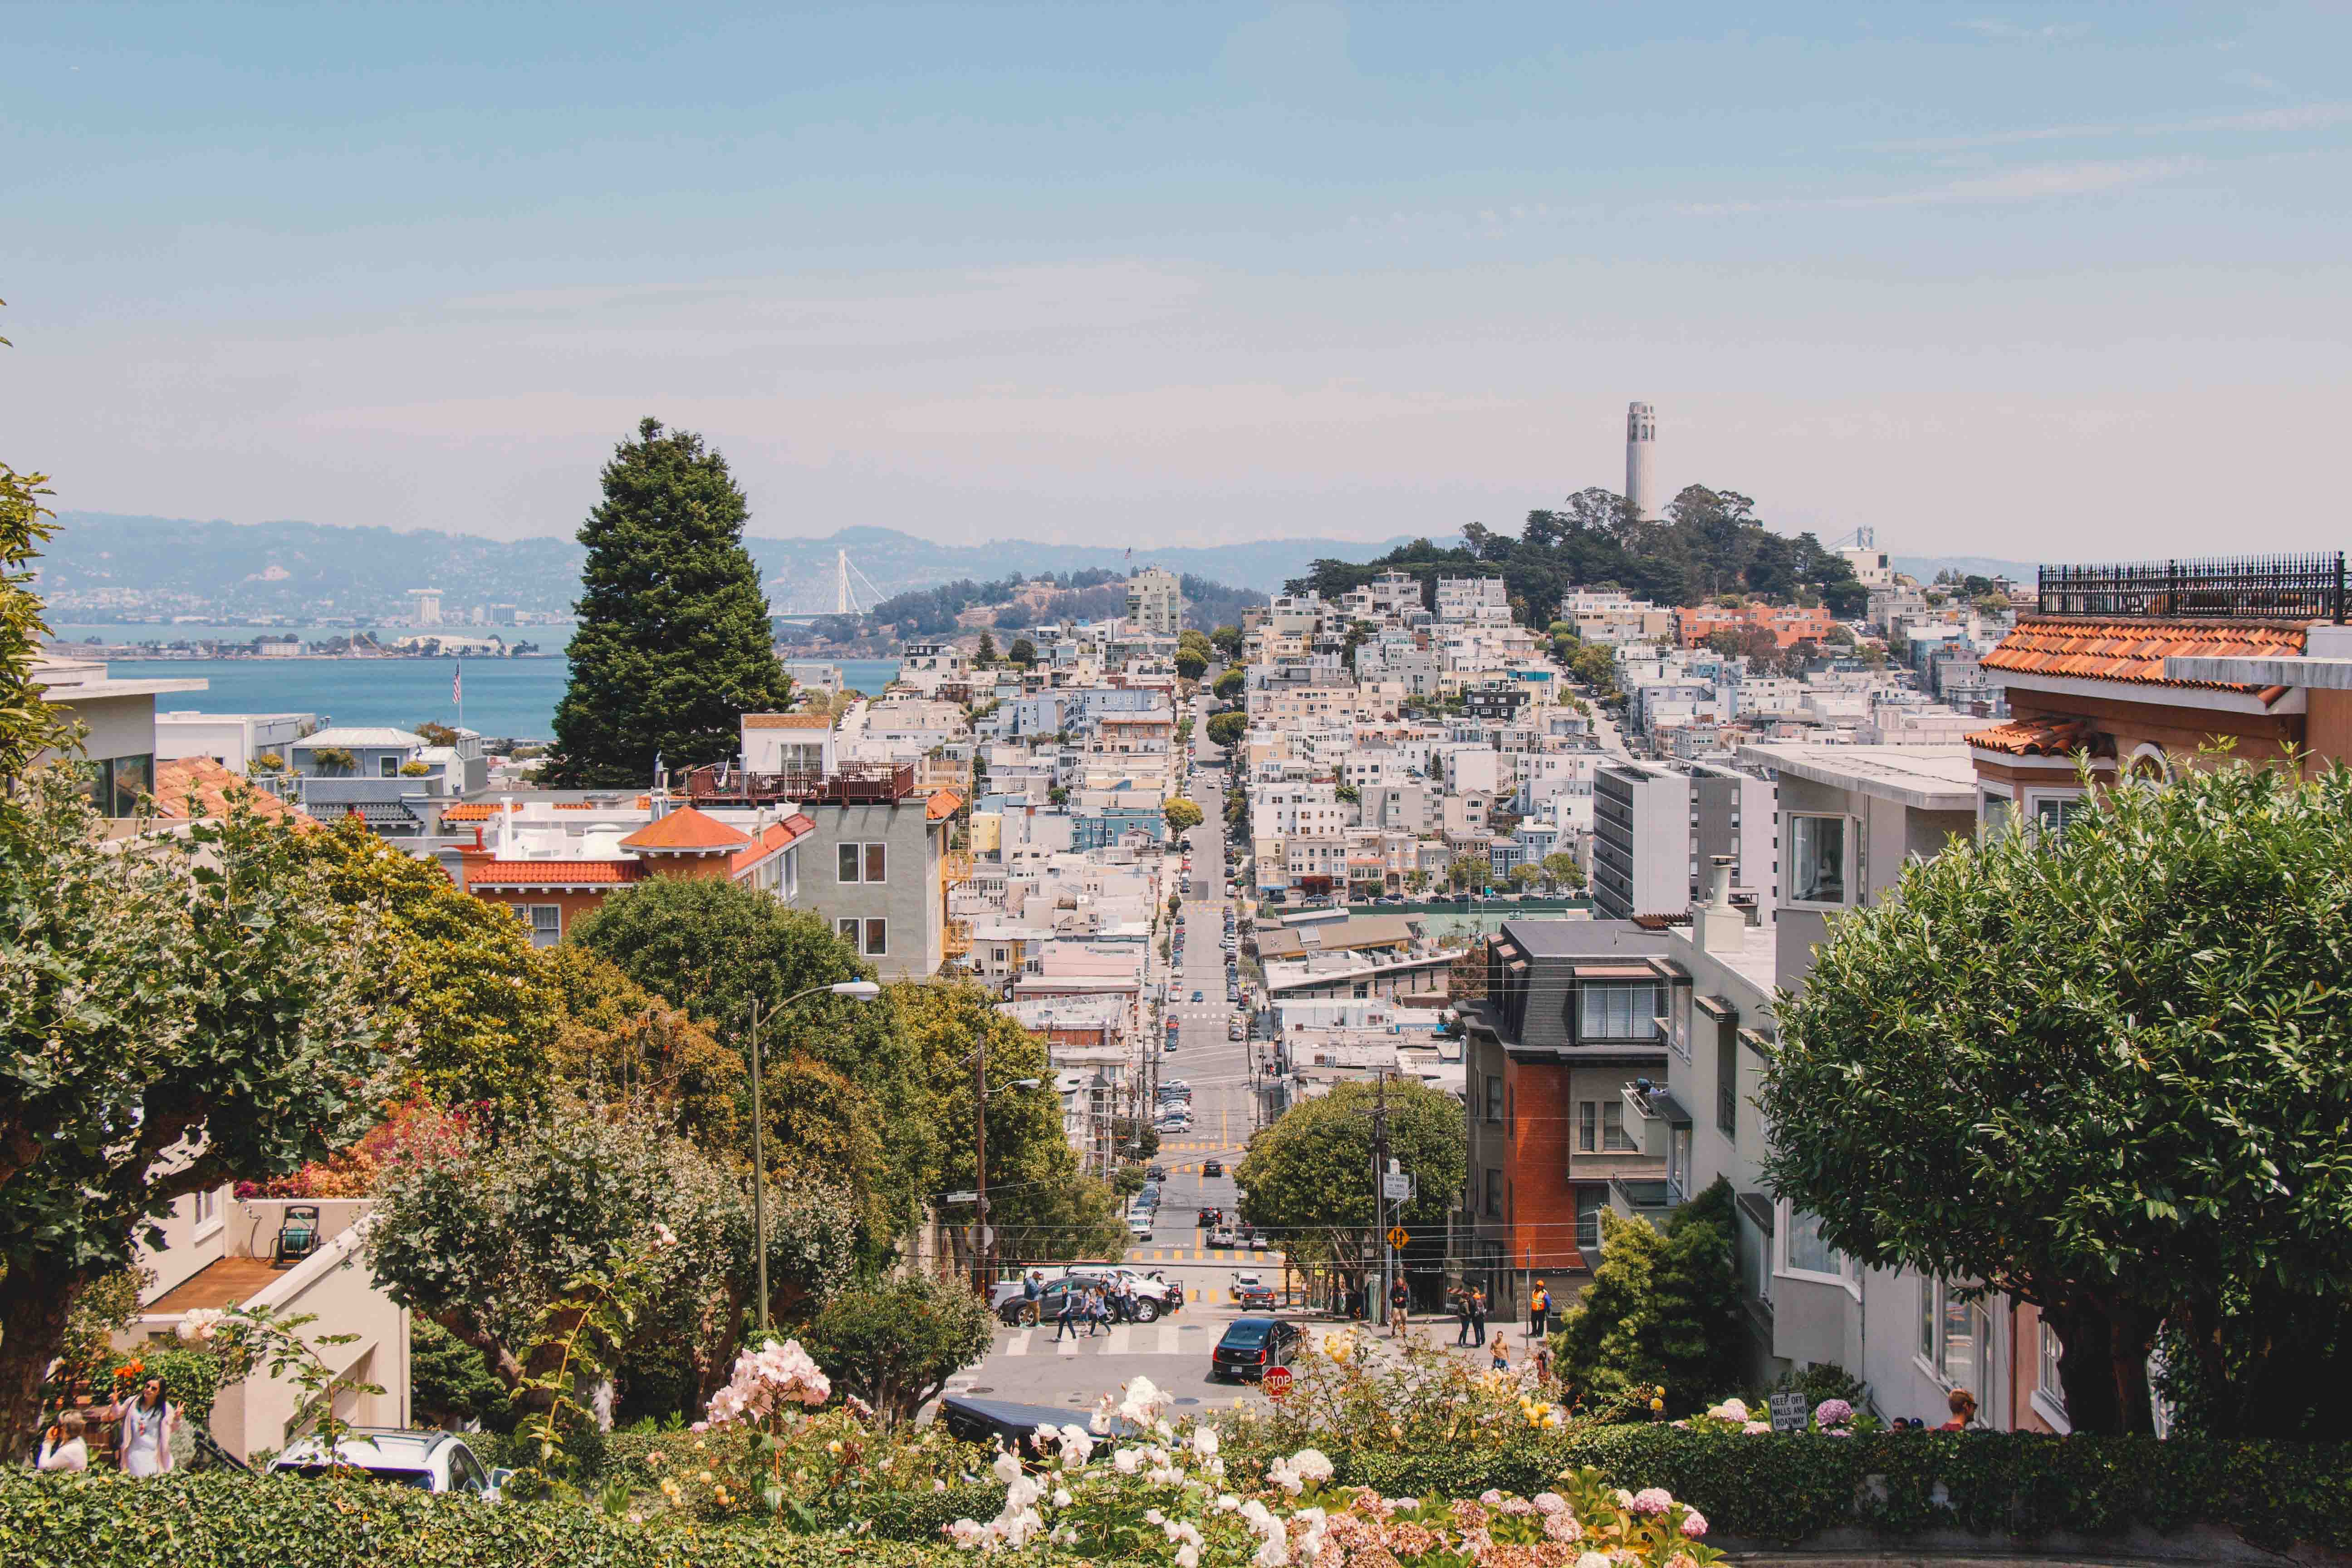 San Francisco hills